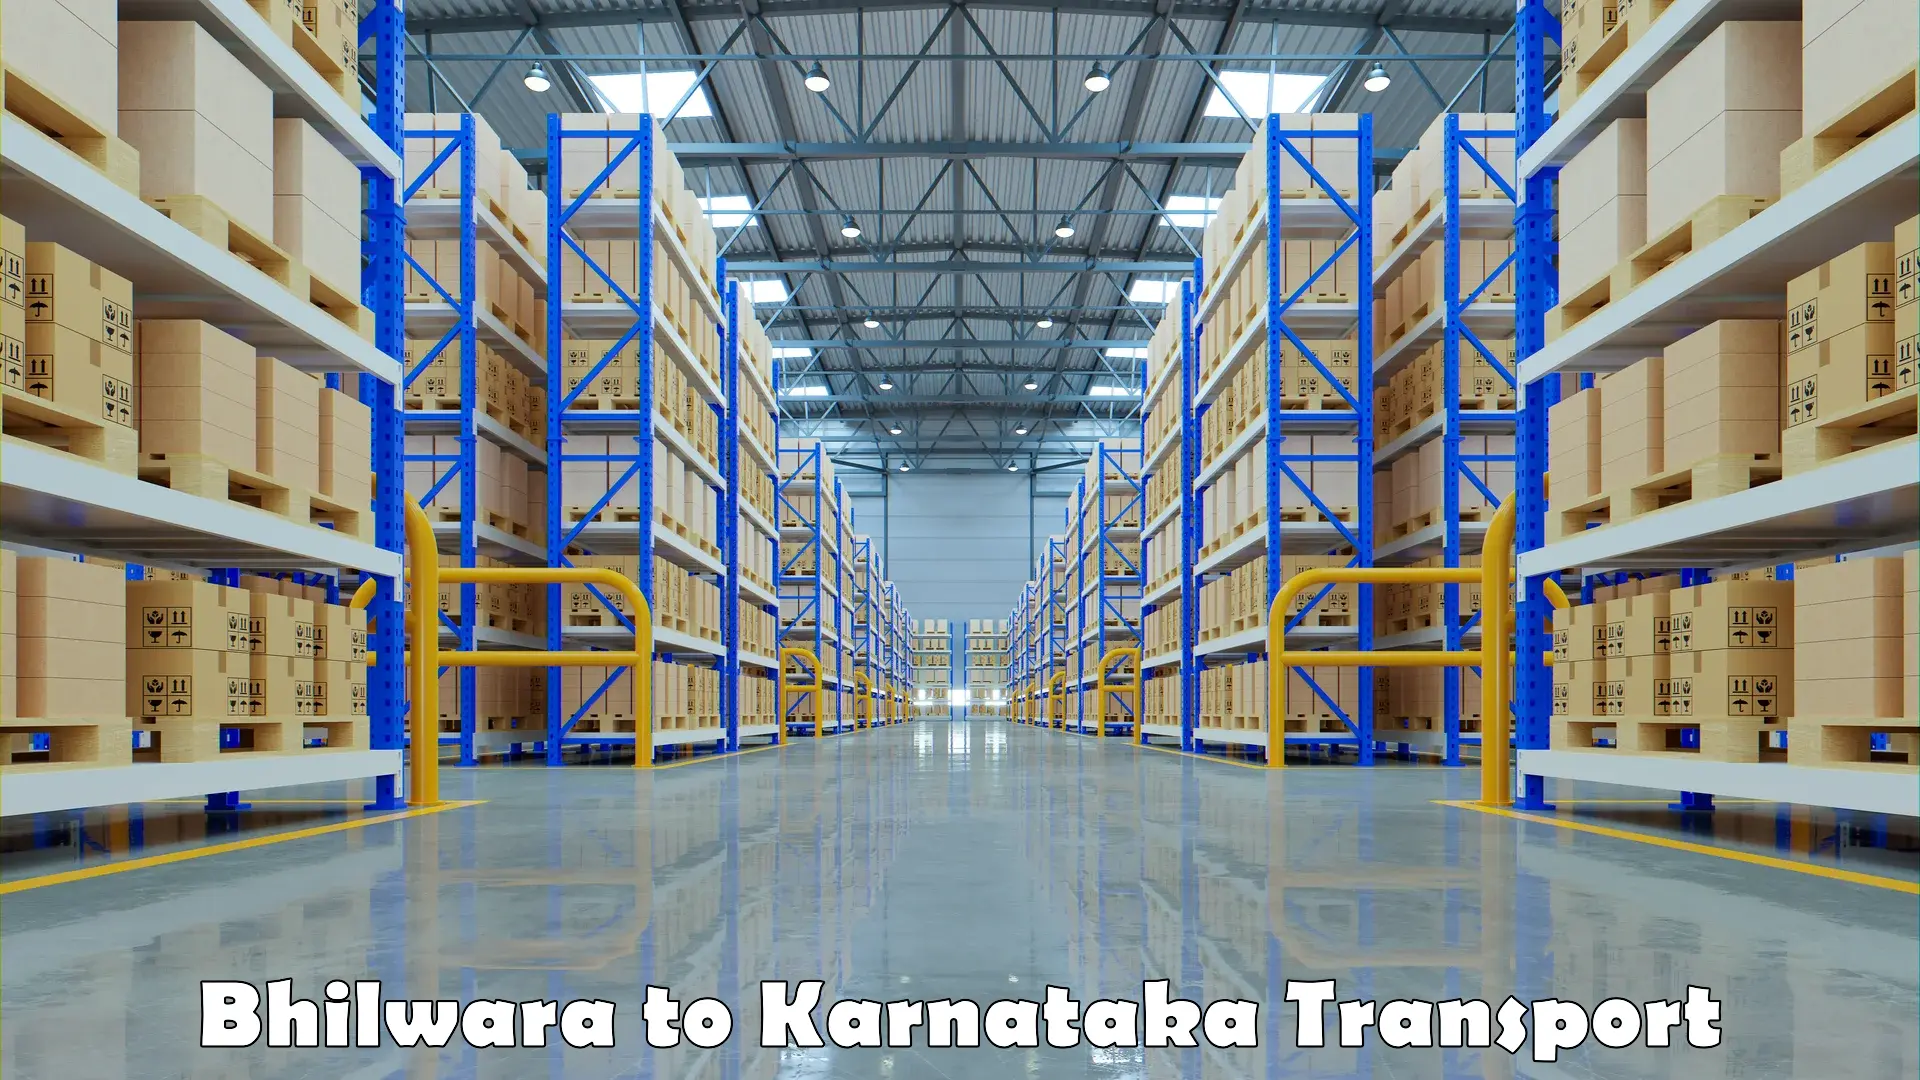 Furniture transport service Bhilwara to Karnataka